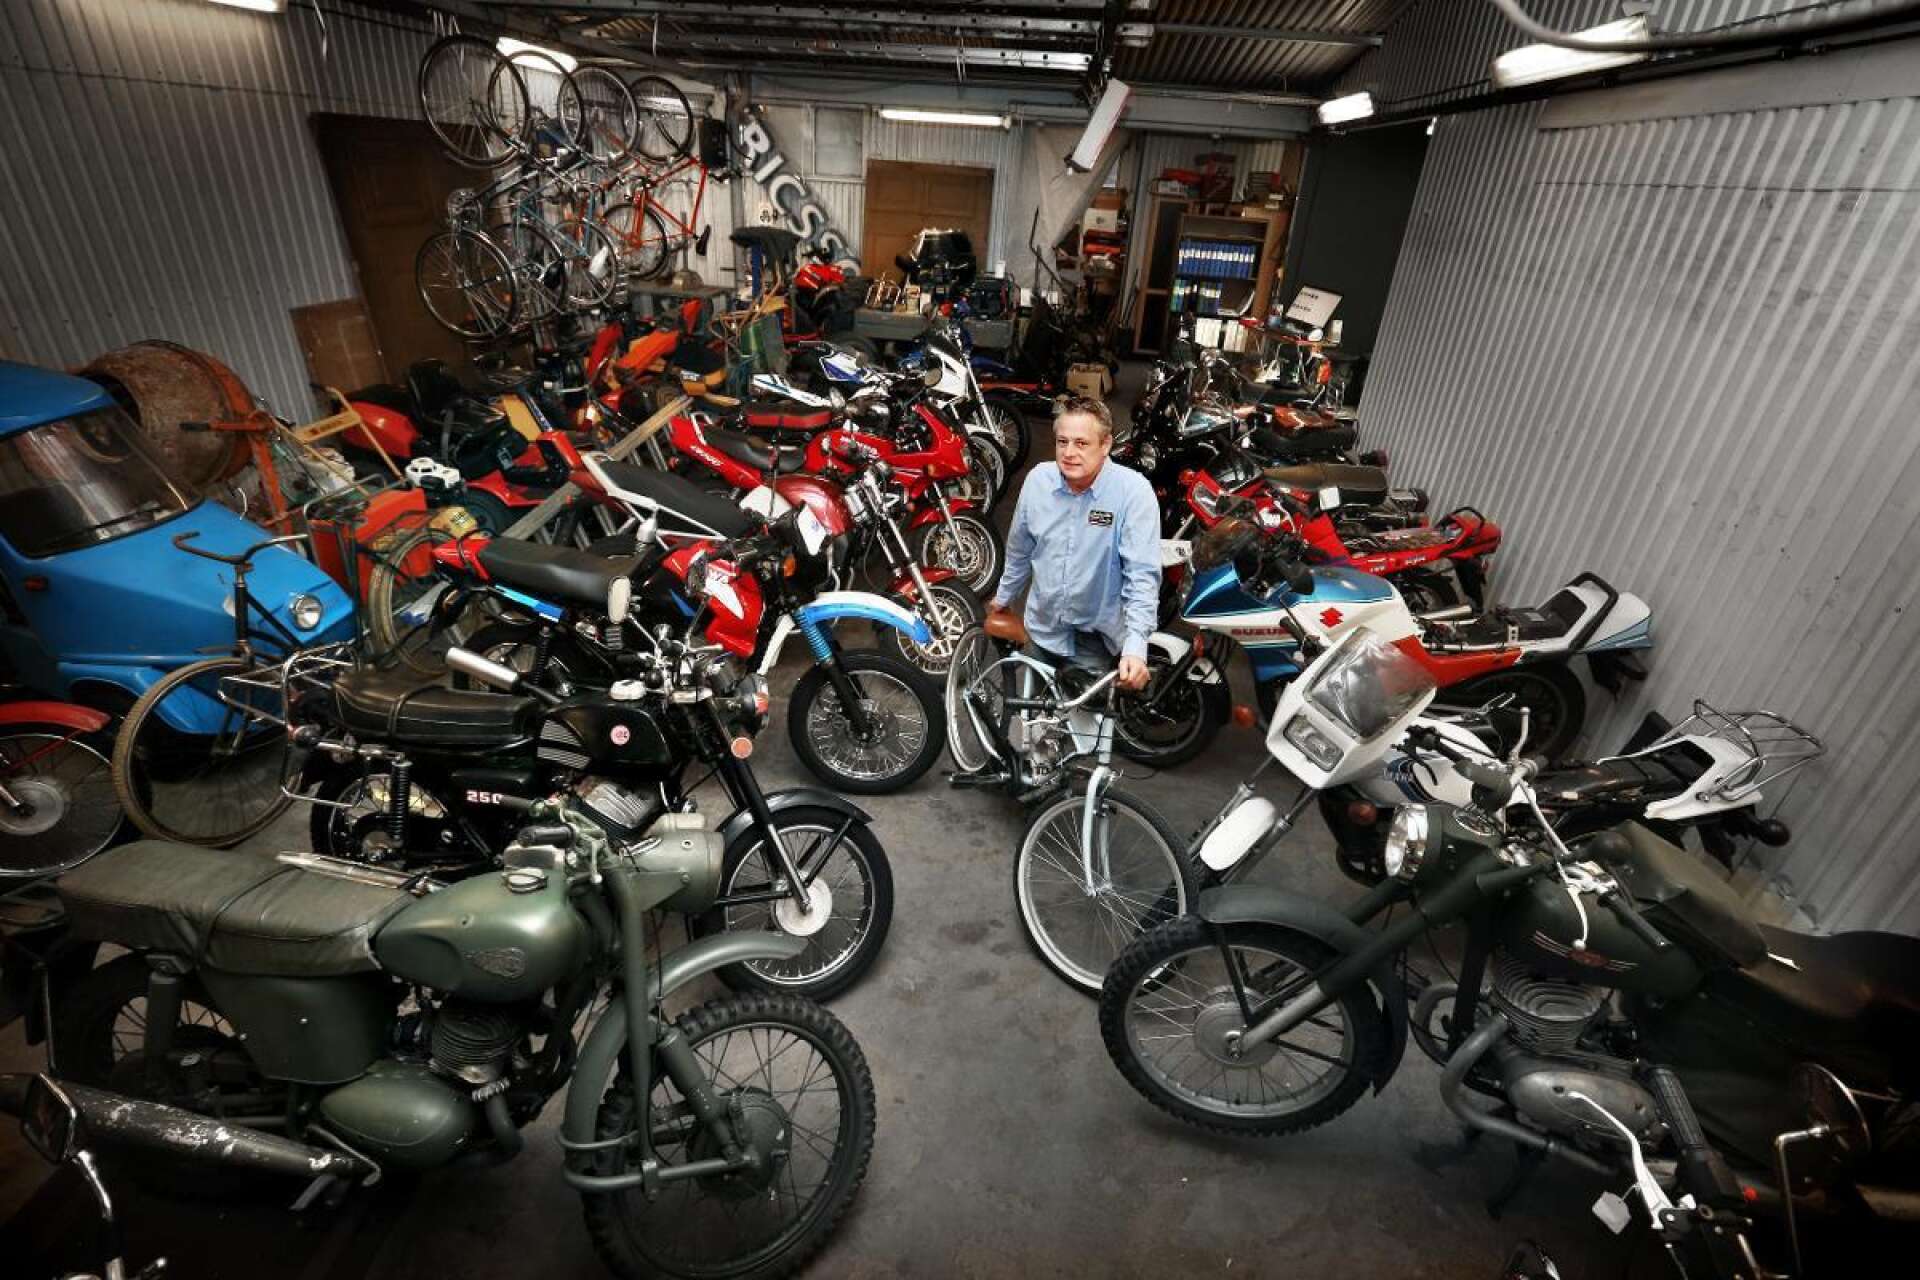 Den här stora samlingen av motorcyklar, mopeder och cyklar ska Auktionsverket i Karlstad snart sälja. Den ägs av en äldre man från Karlstad och de flesta fordonen har bara gått några få mil, berättar Peter Pettersson.